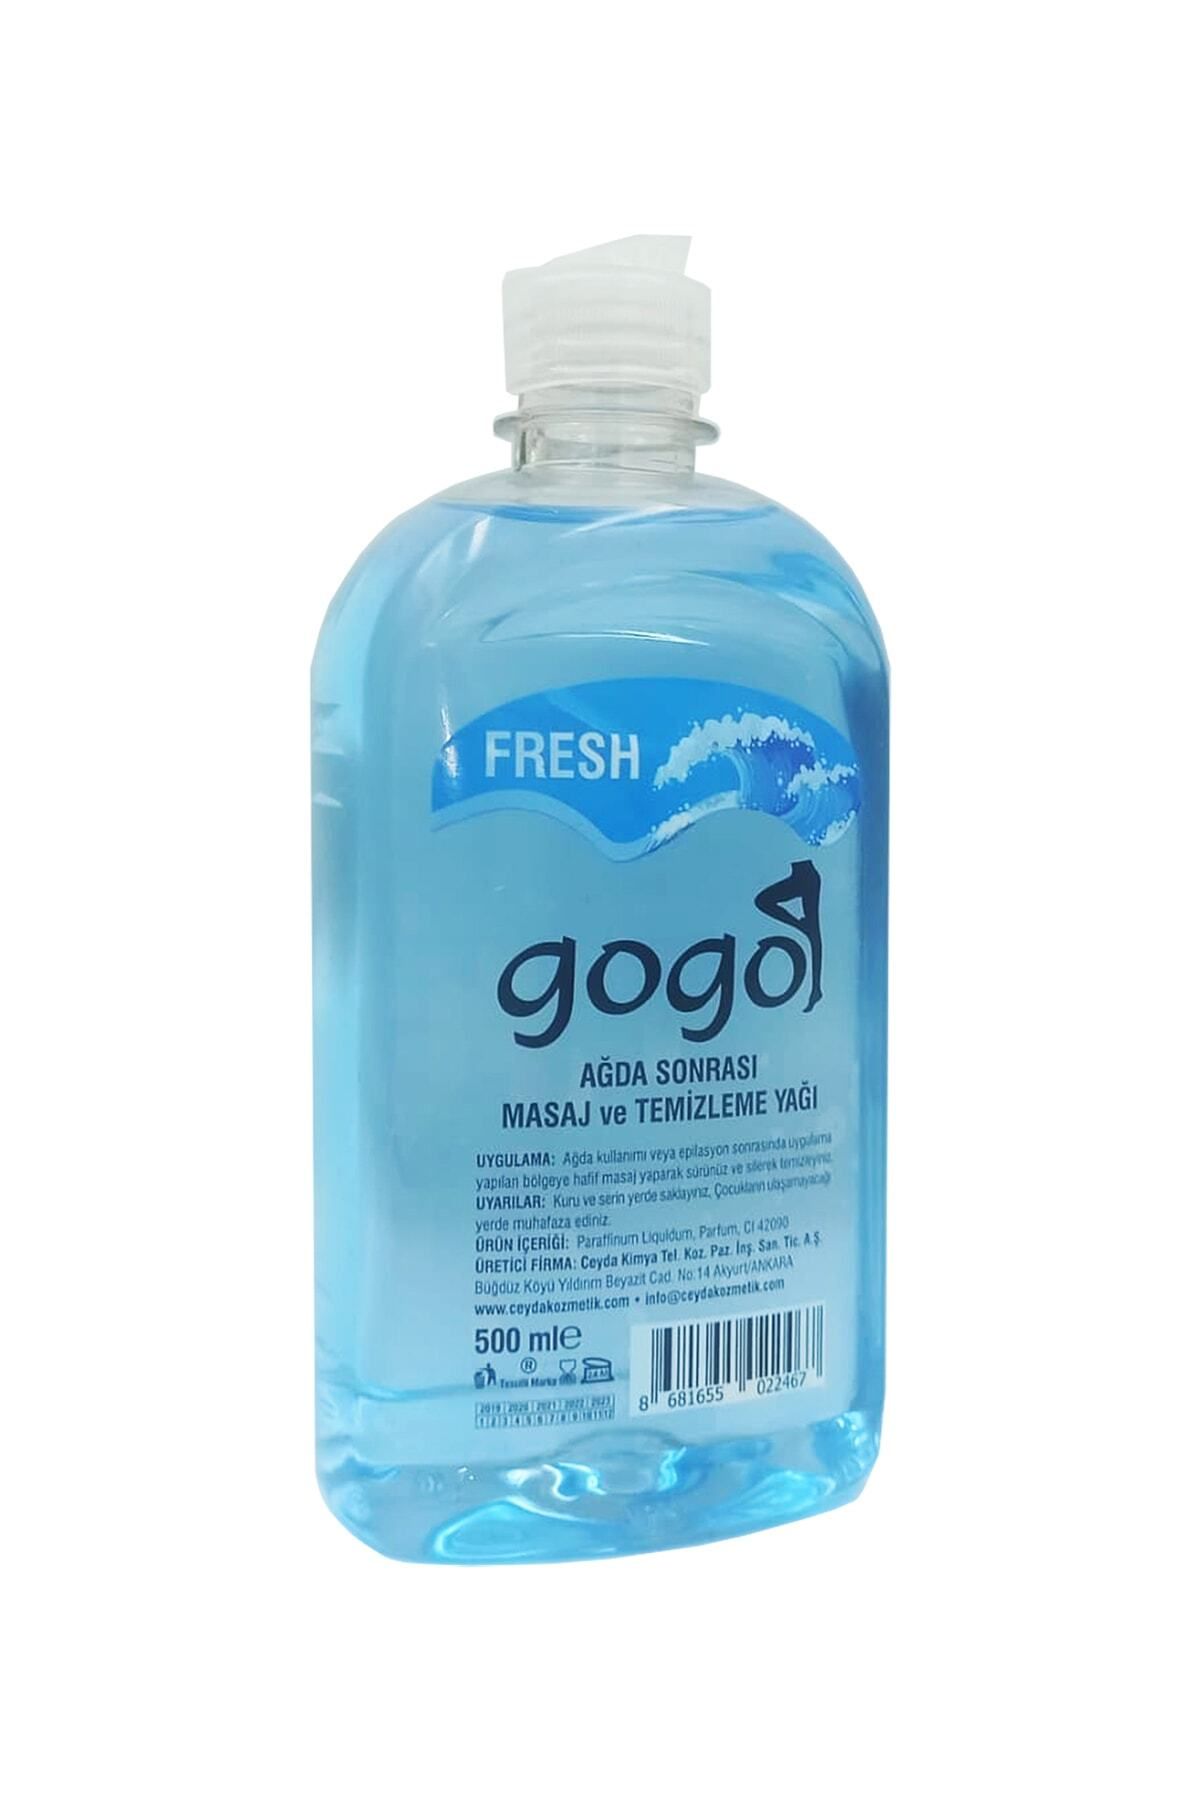 Gogo Ağda Sonrası Masaj Ve Temizleme Yağı Fresh 500ml